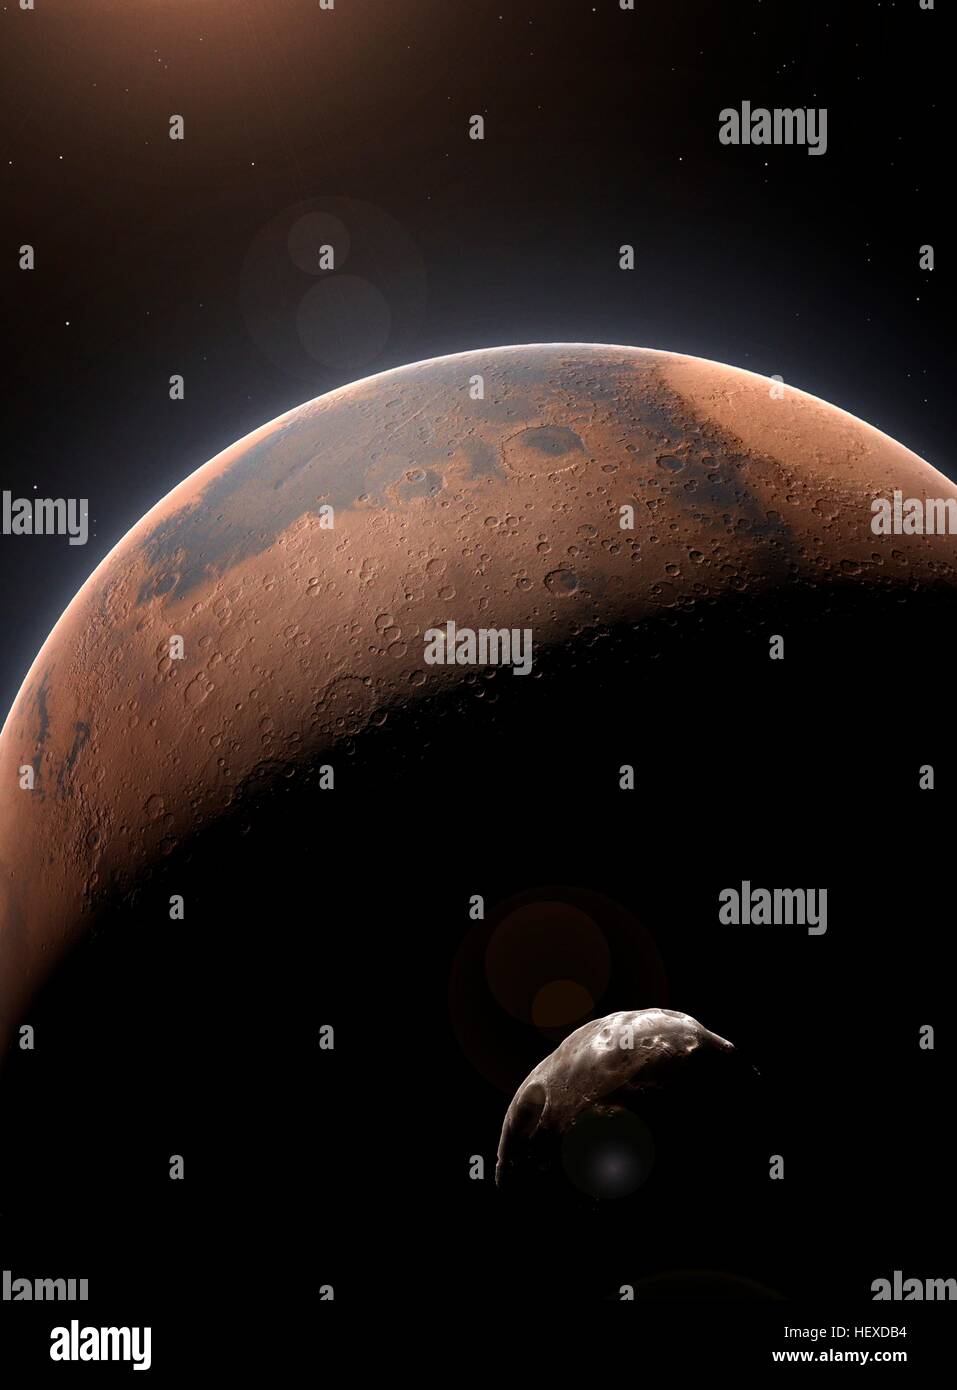 Einen Eindruck von den roten Planeten, Mars, der zweitkleinste Planet im Sonnensystem (nach Merkur). Seinem Innersten Mond Phobos, sieht man im Vordergrund. Stockfoto